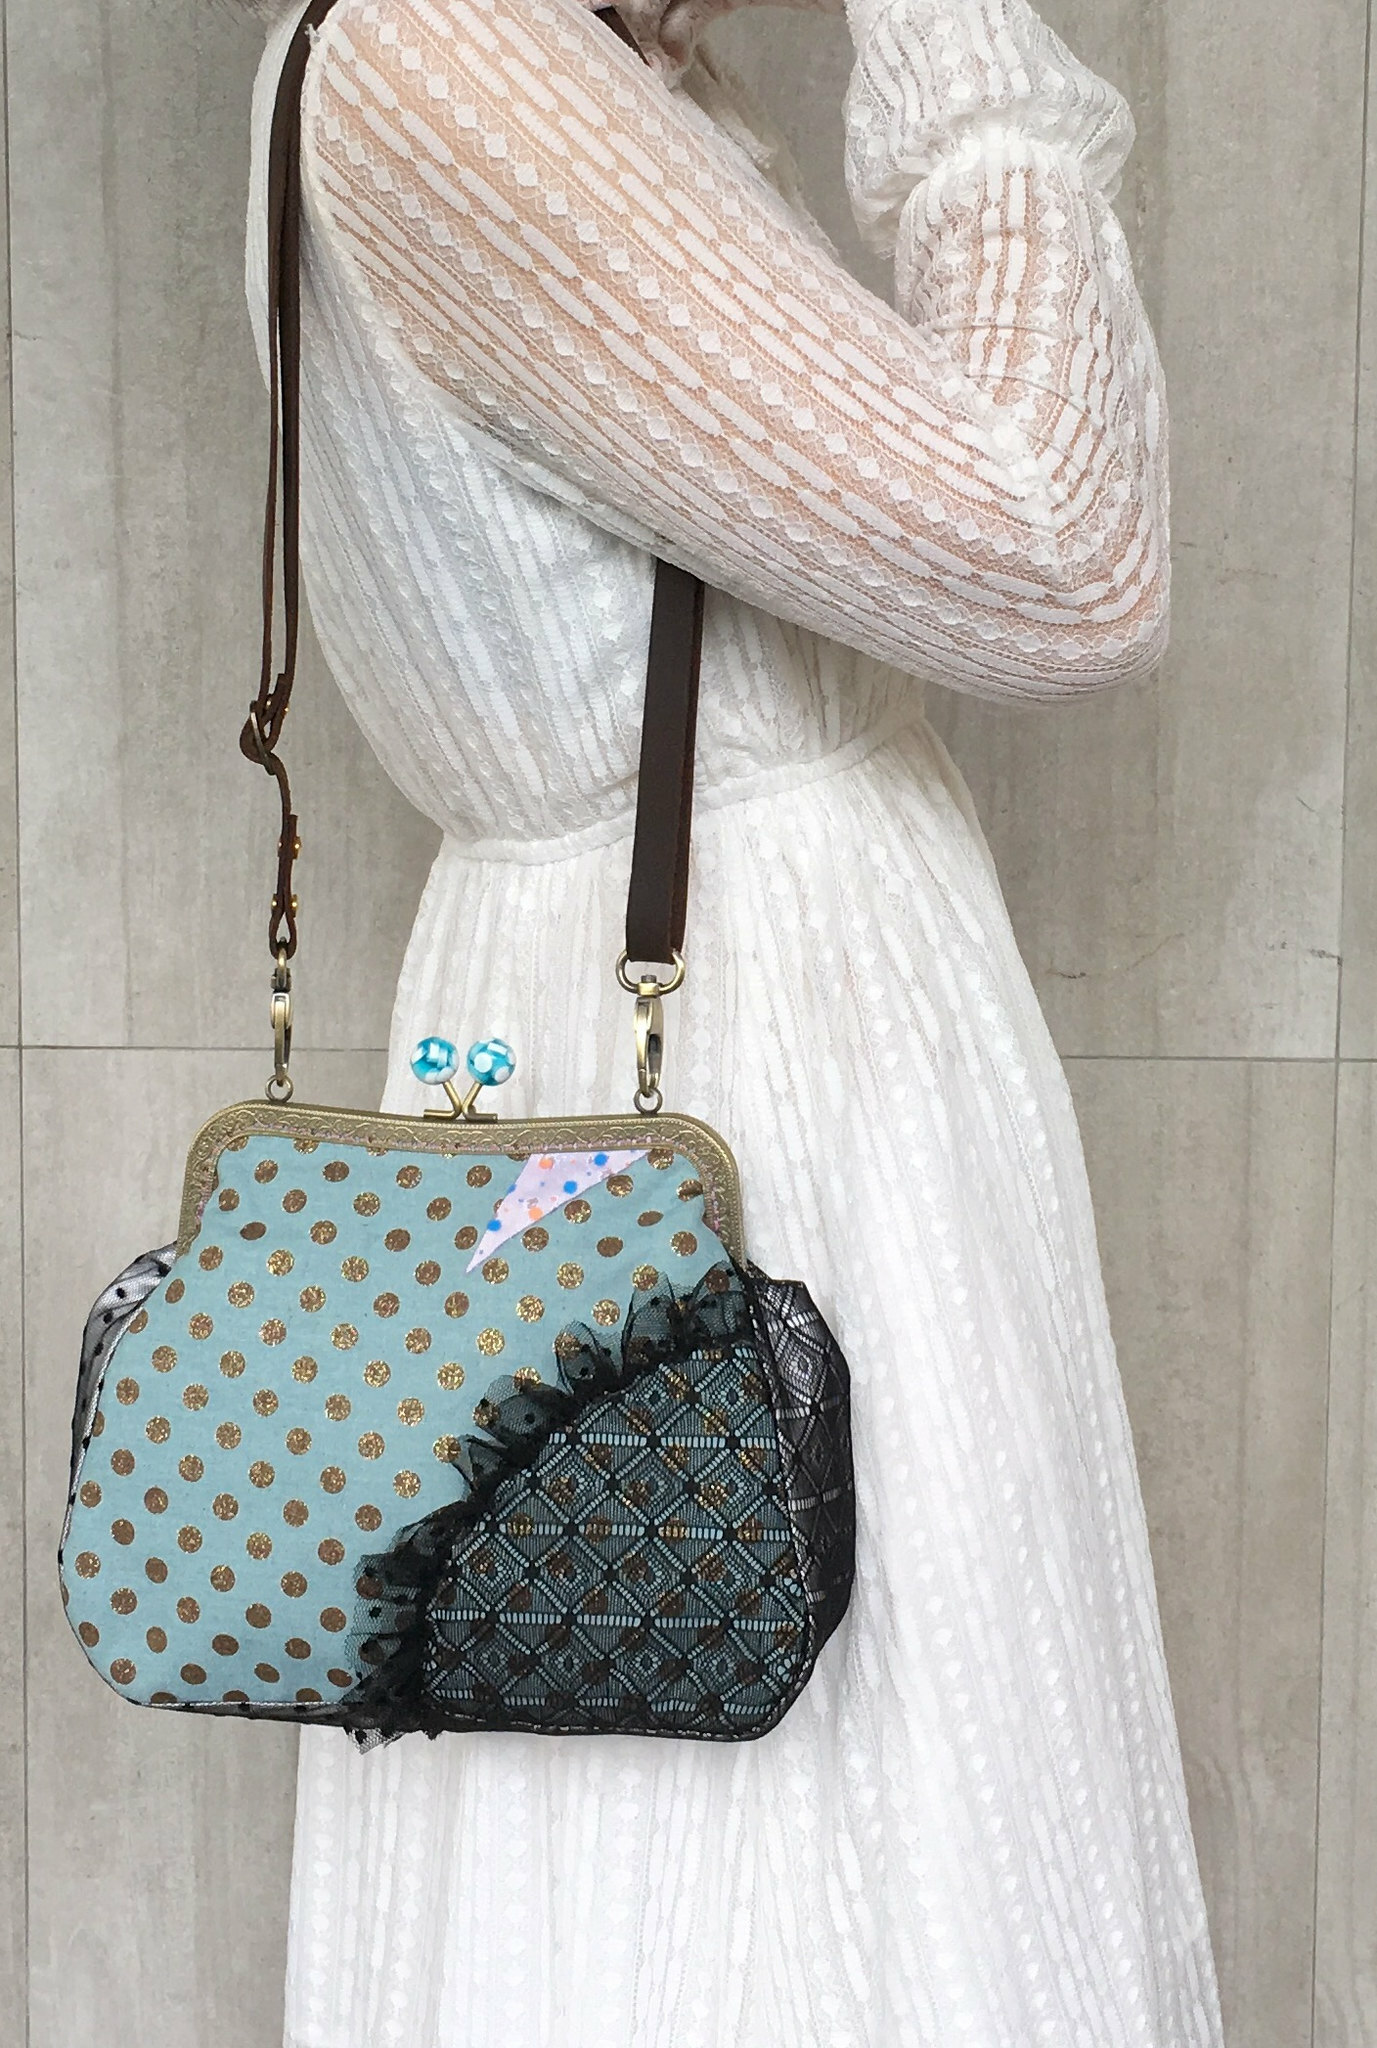 口金包點點法式吻鎖包側背圖 gamaguchi French style clasp bag wearing01 風后妃設計